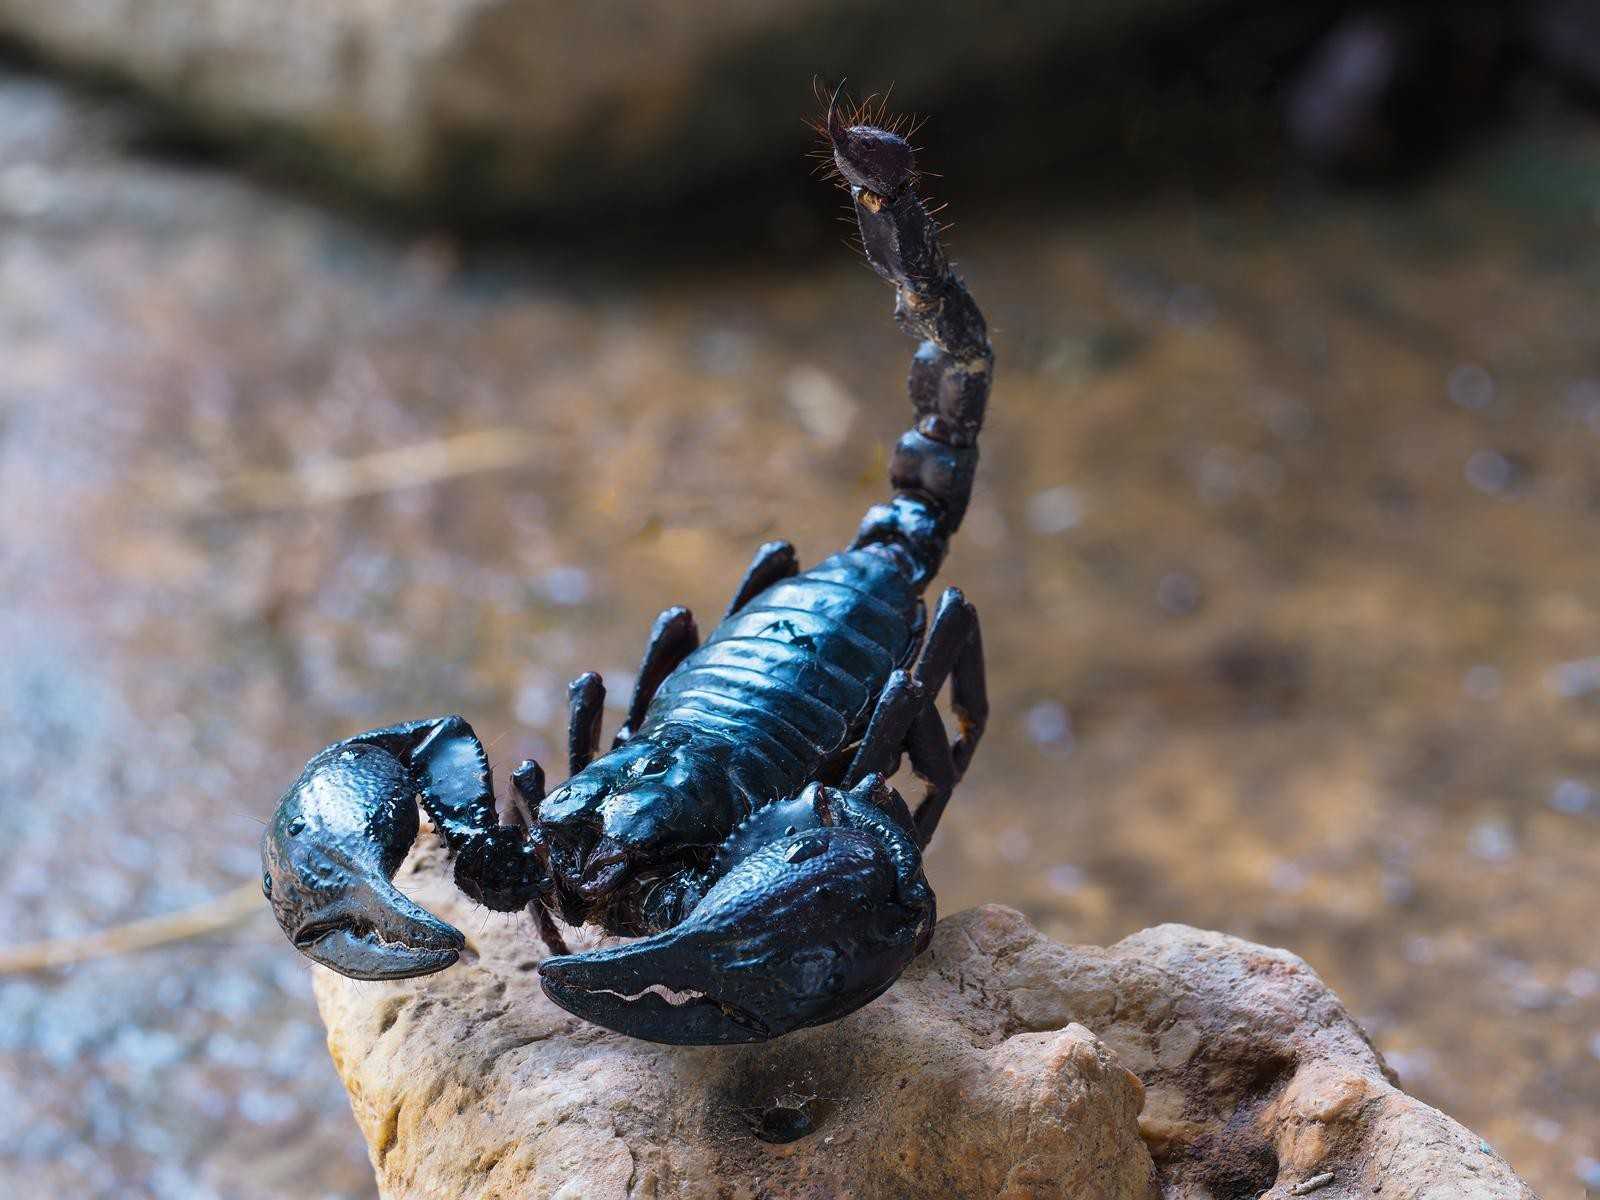 К чему снится черный скорпион: маленький, большой, жалящий, убегающий, в доме, банке, кусает, нападает, дерется, ловить, убить